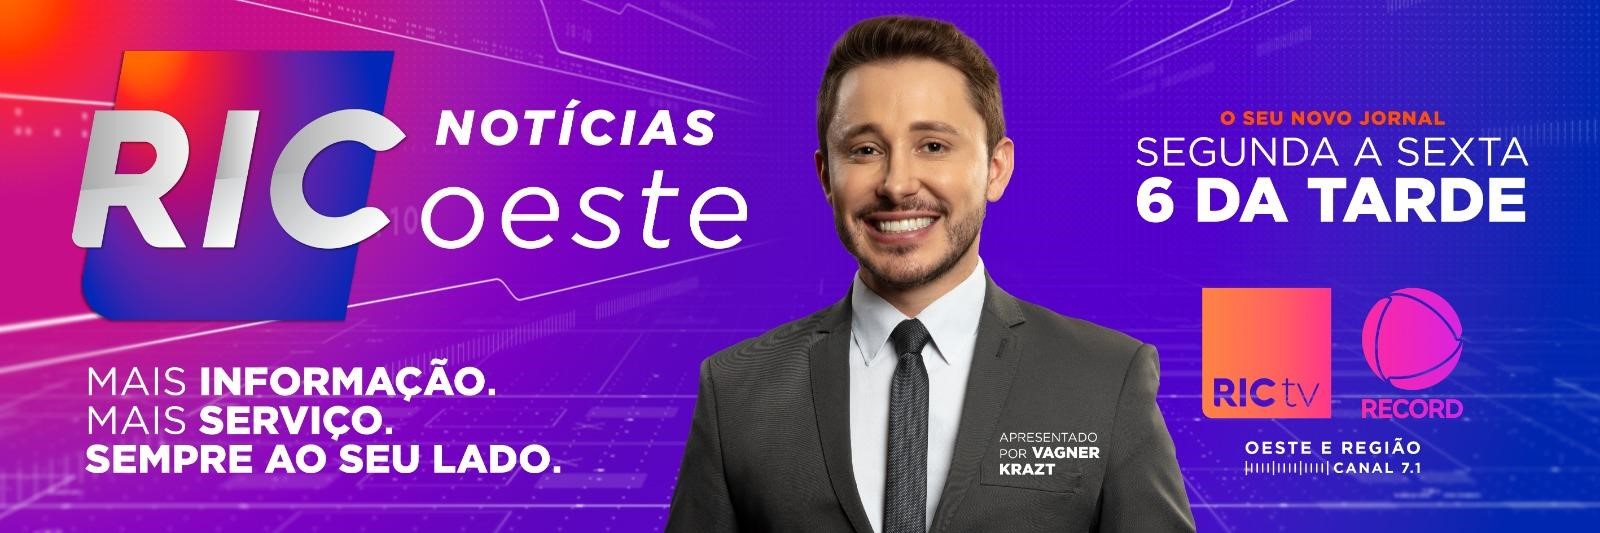 RIC Notícias Oeste estreia neste dia 1º, no lugar do Cidade Alerta